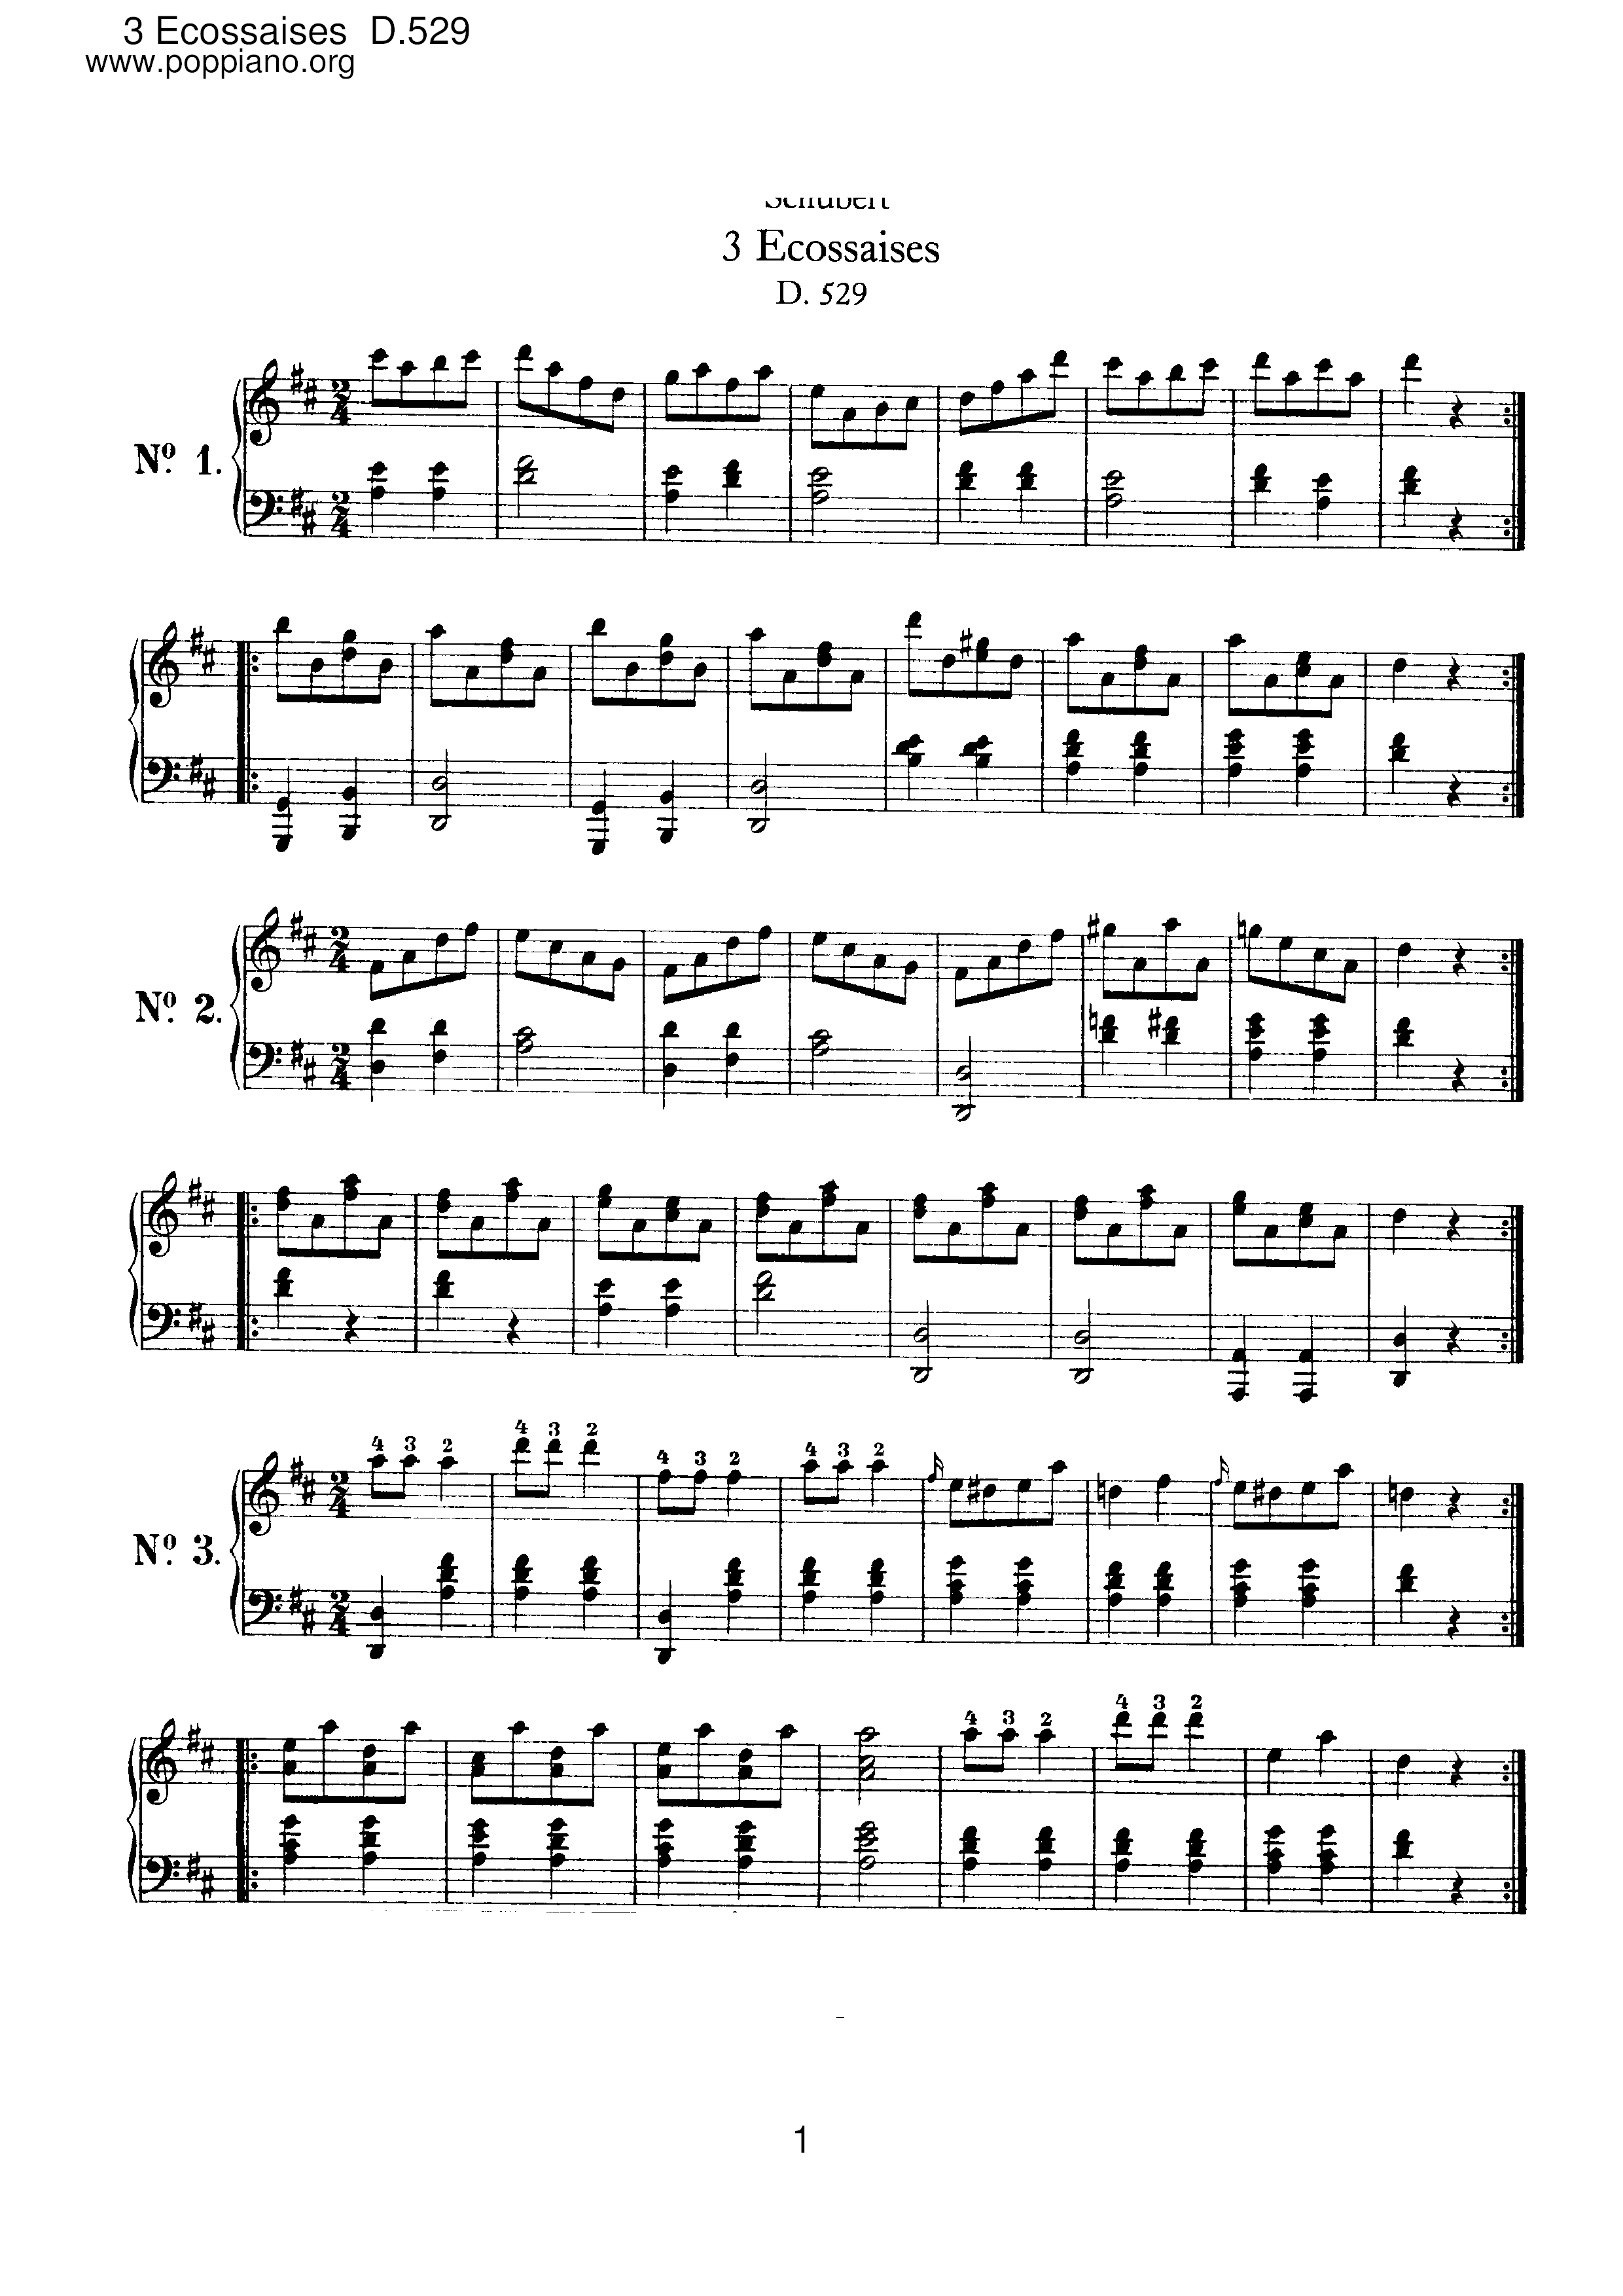 3 Ecossaises, D.529 Score